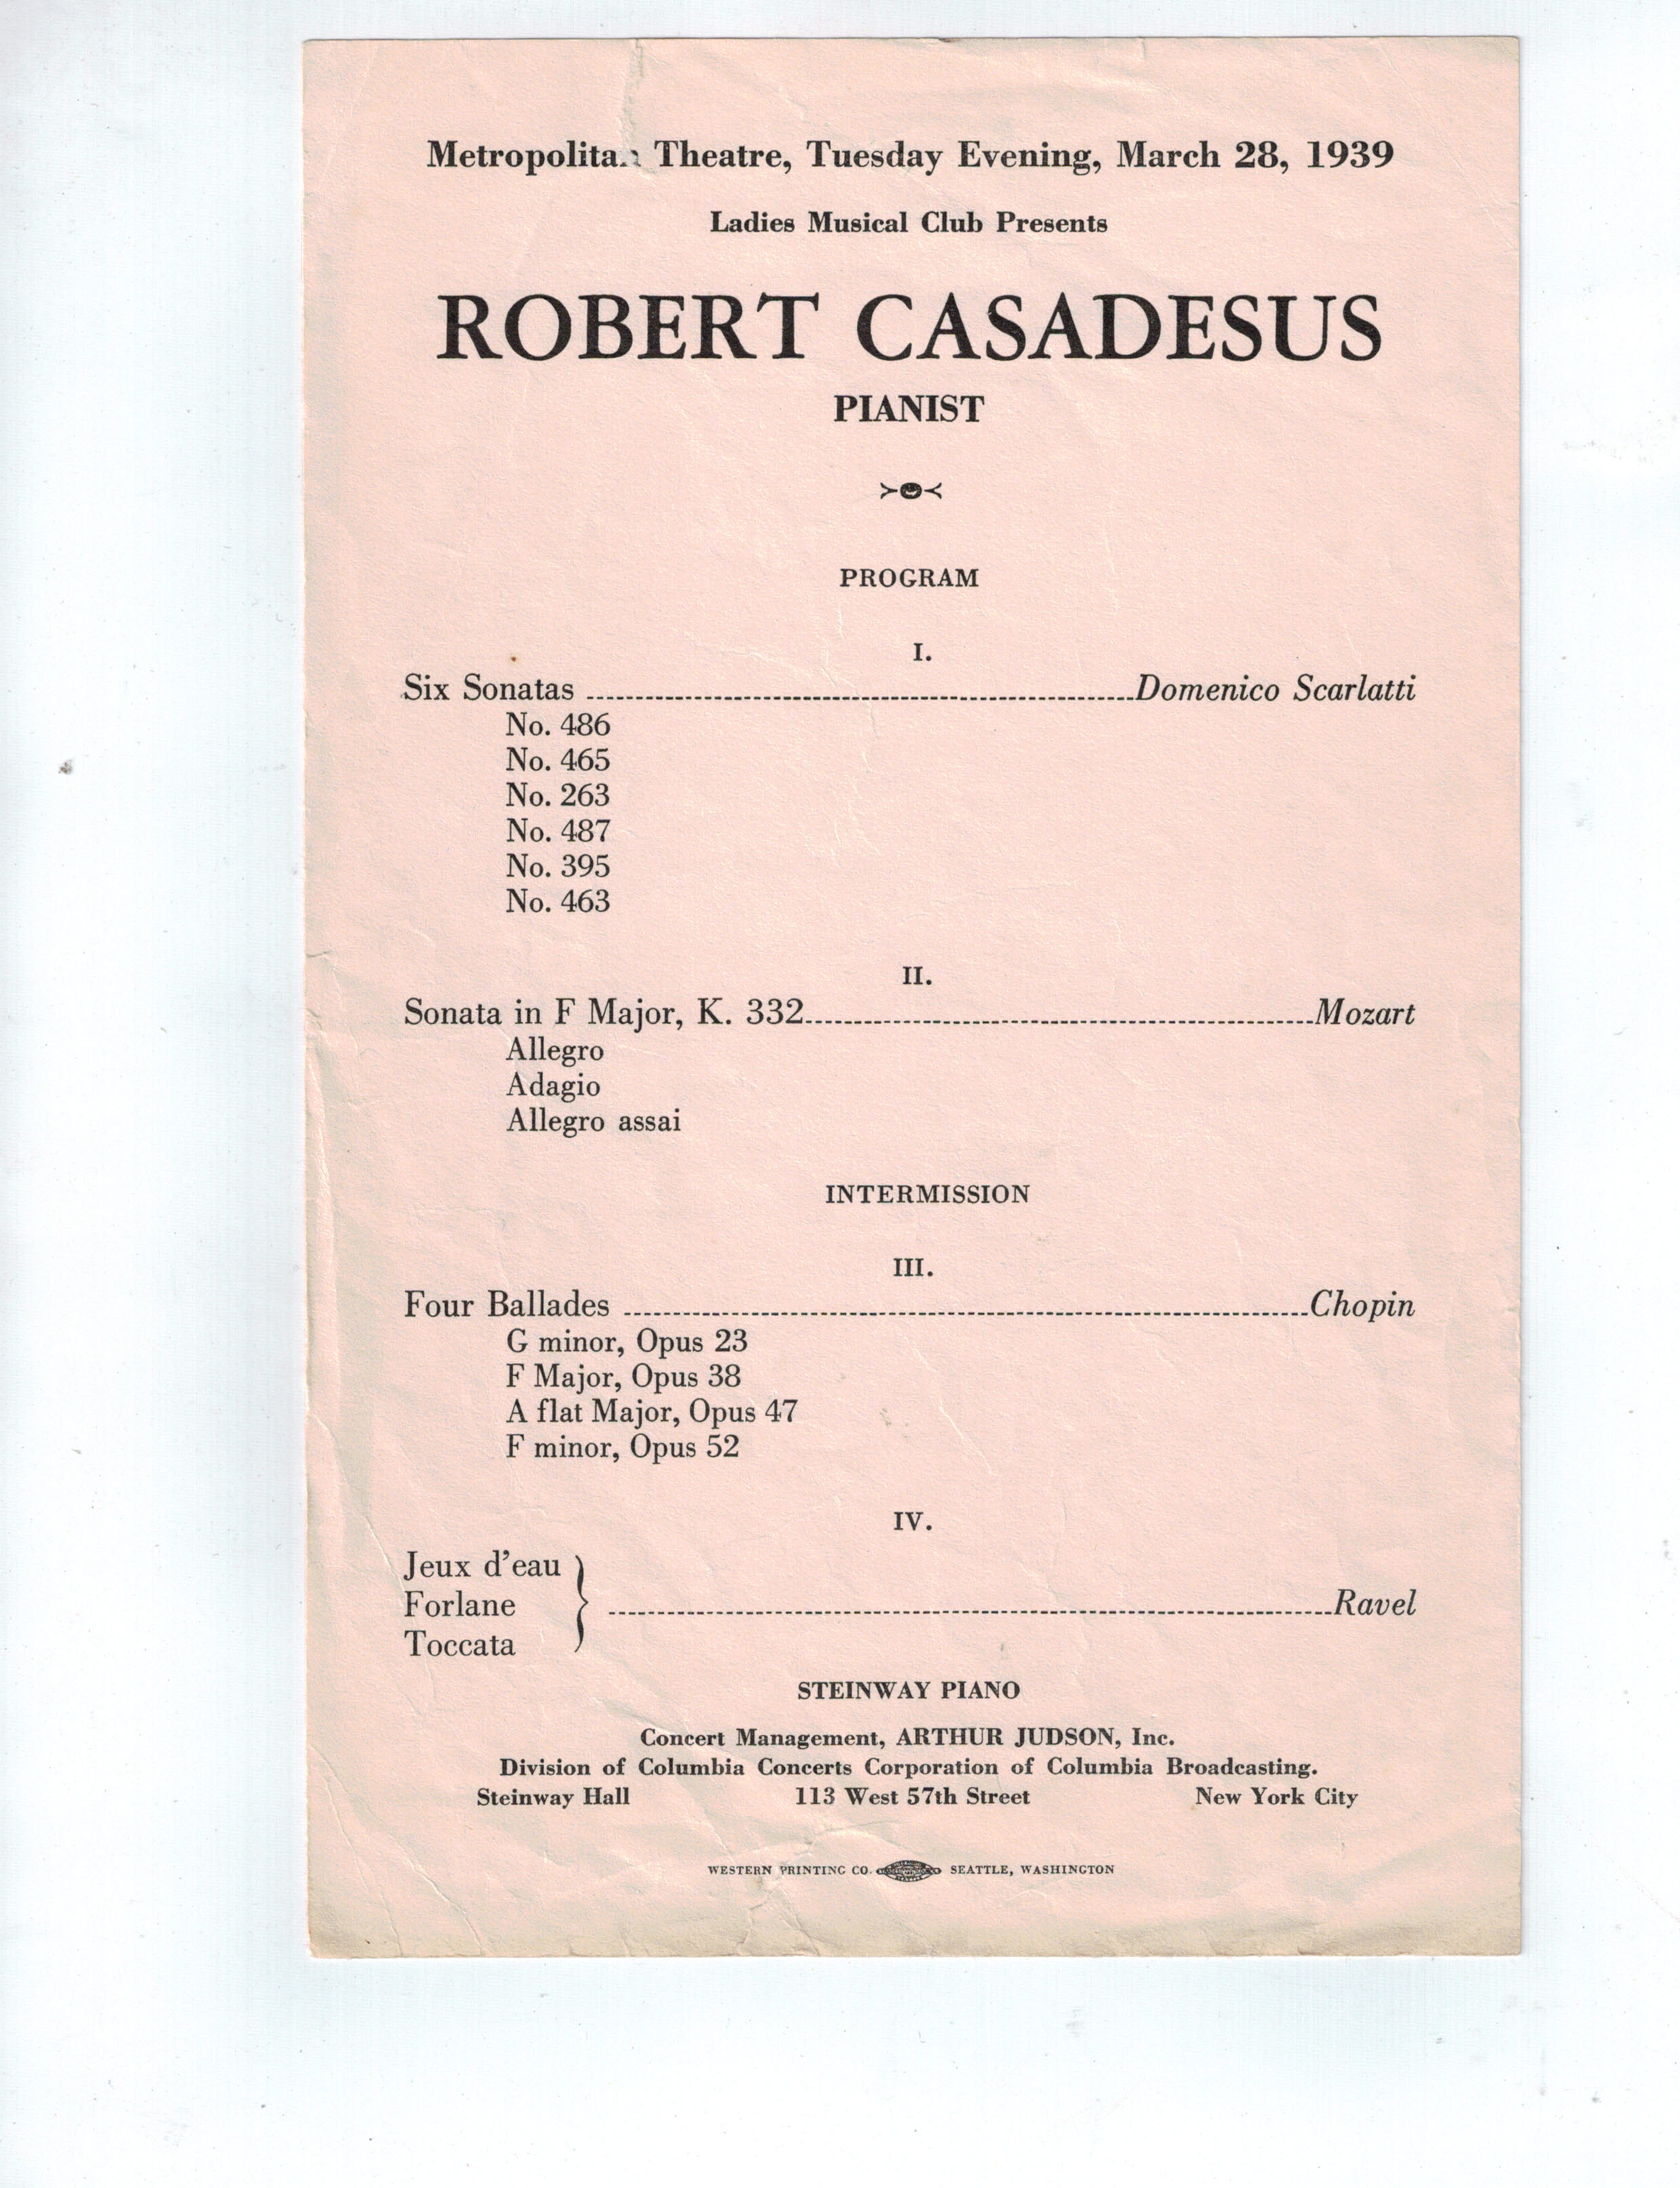 Robert Casadesus Concert Program 1939